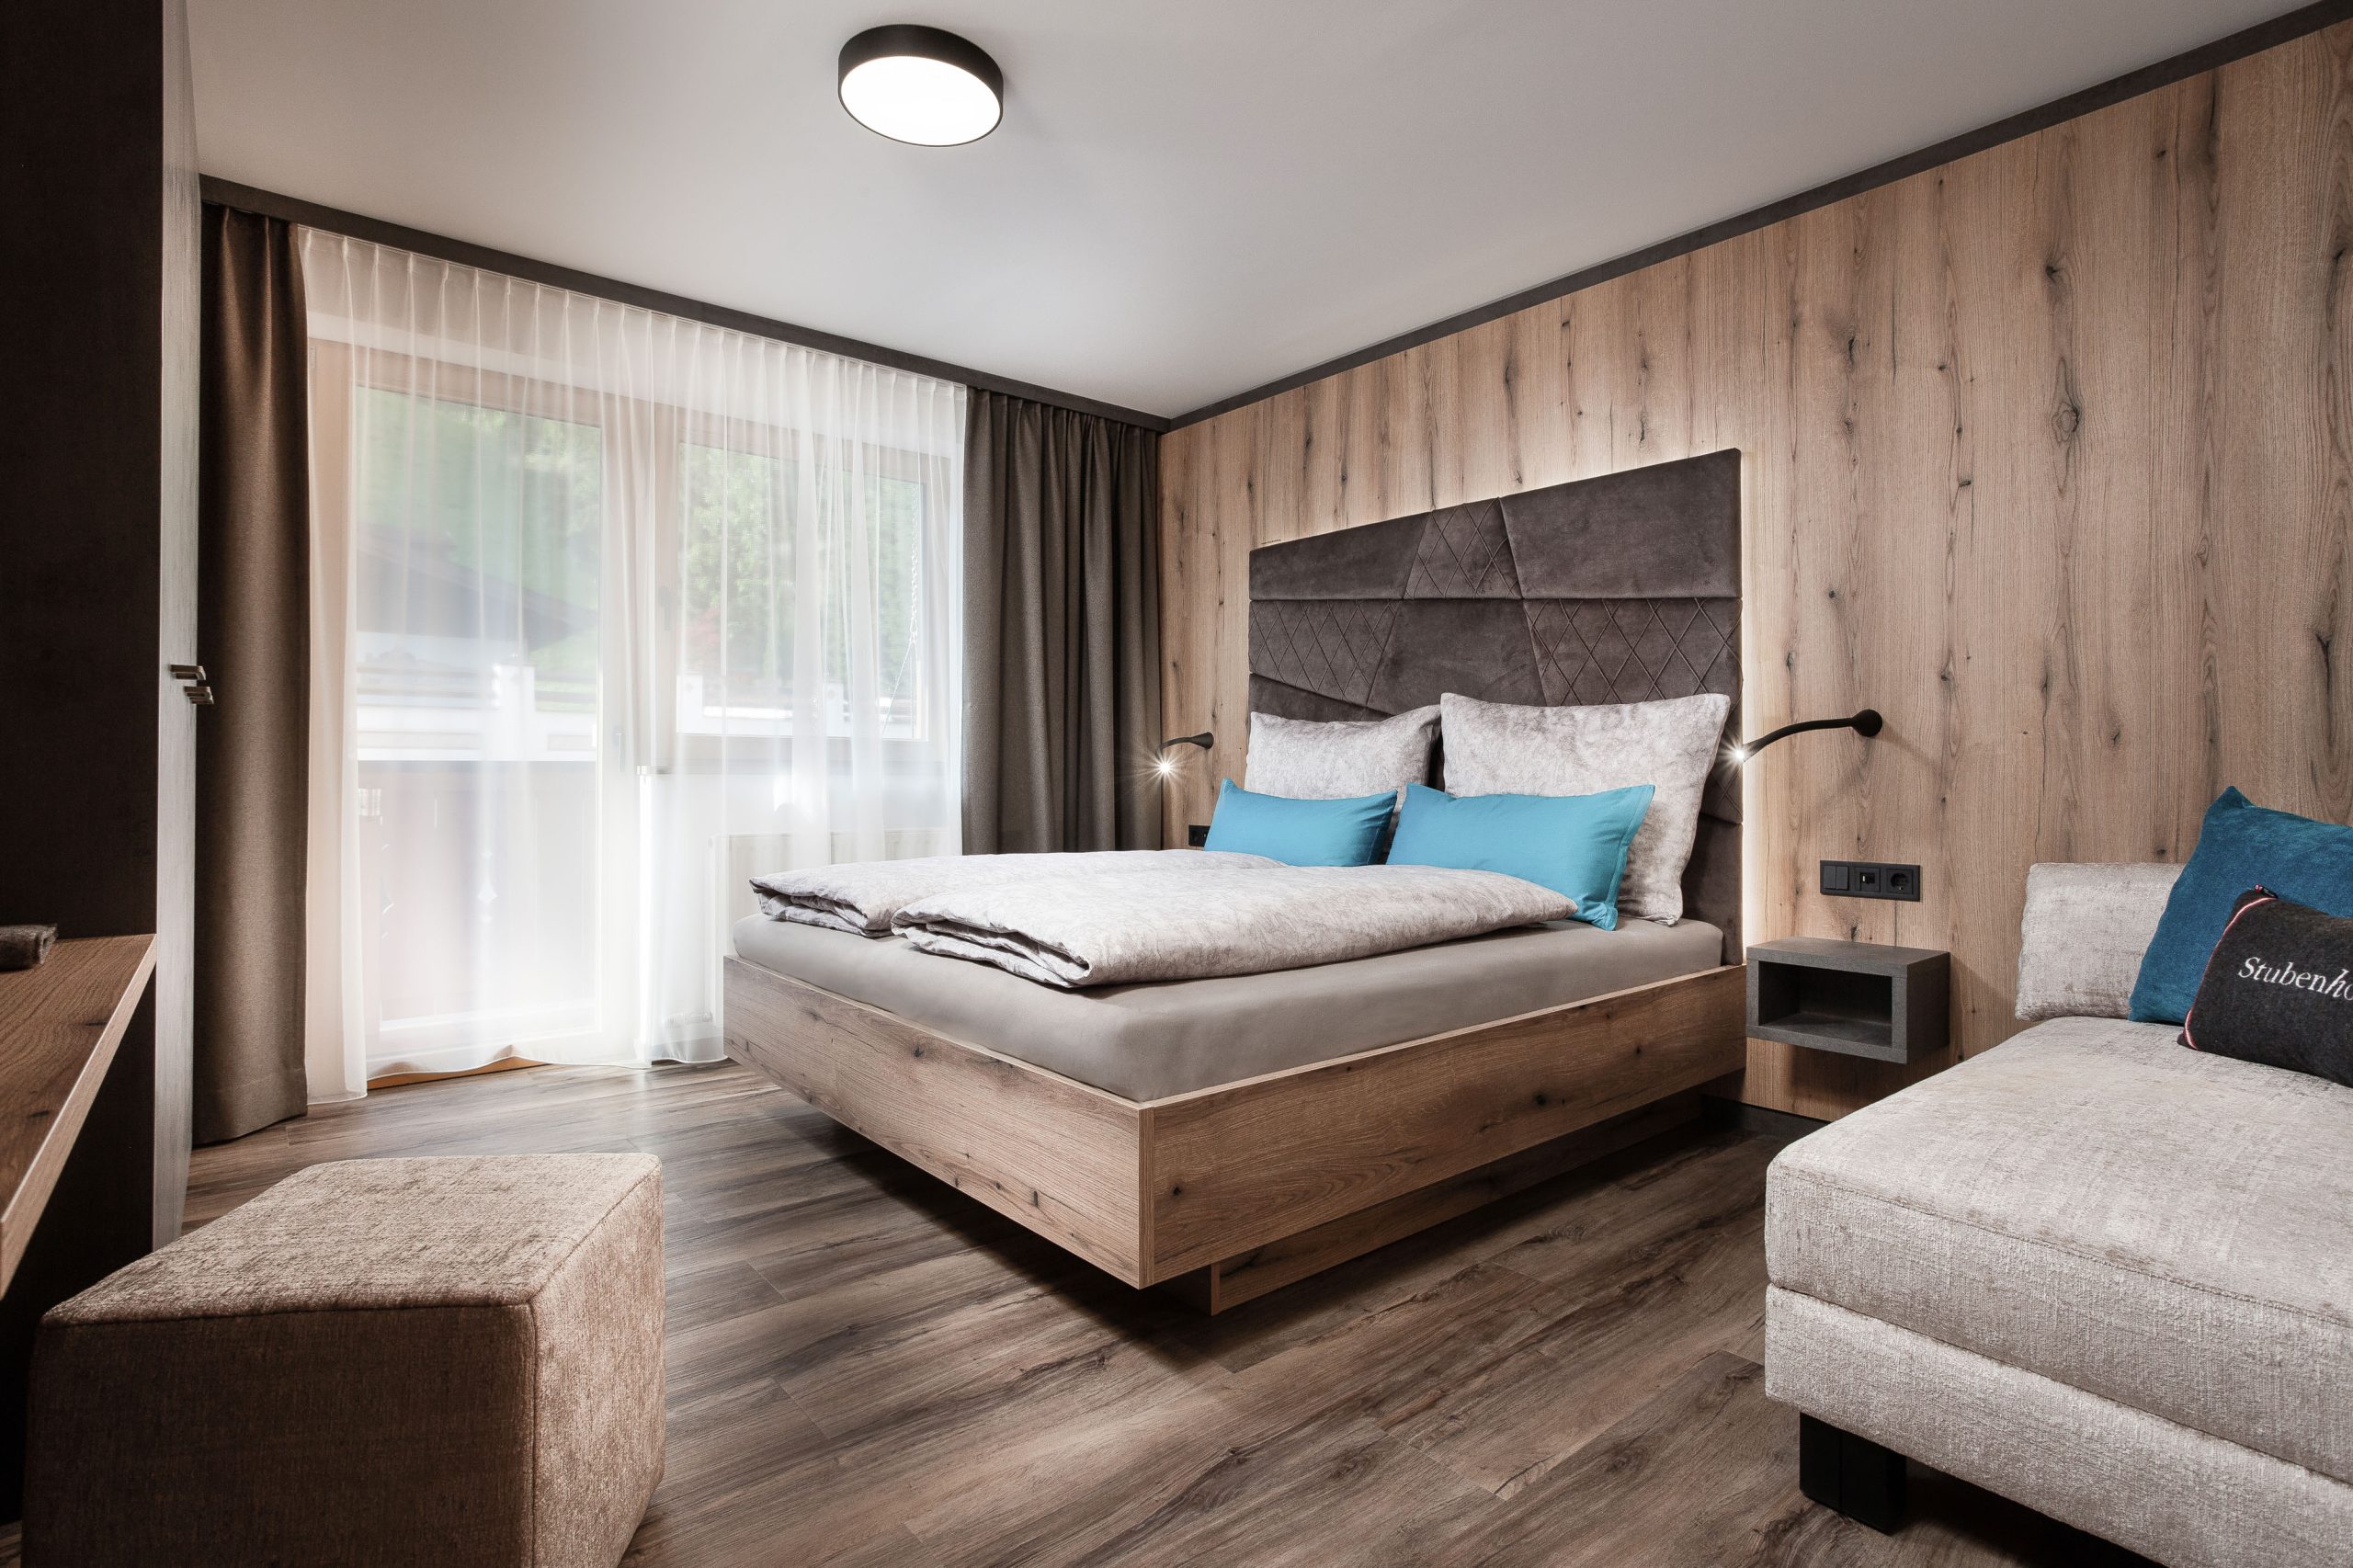 Apartments Niederseer / Schlafzimmer in Saalbach (Salzburg) by Gappmaier Design